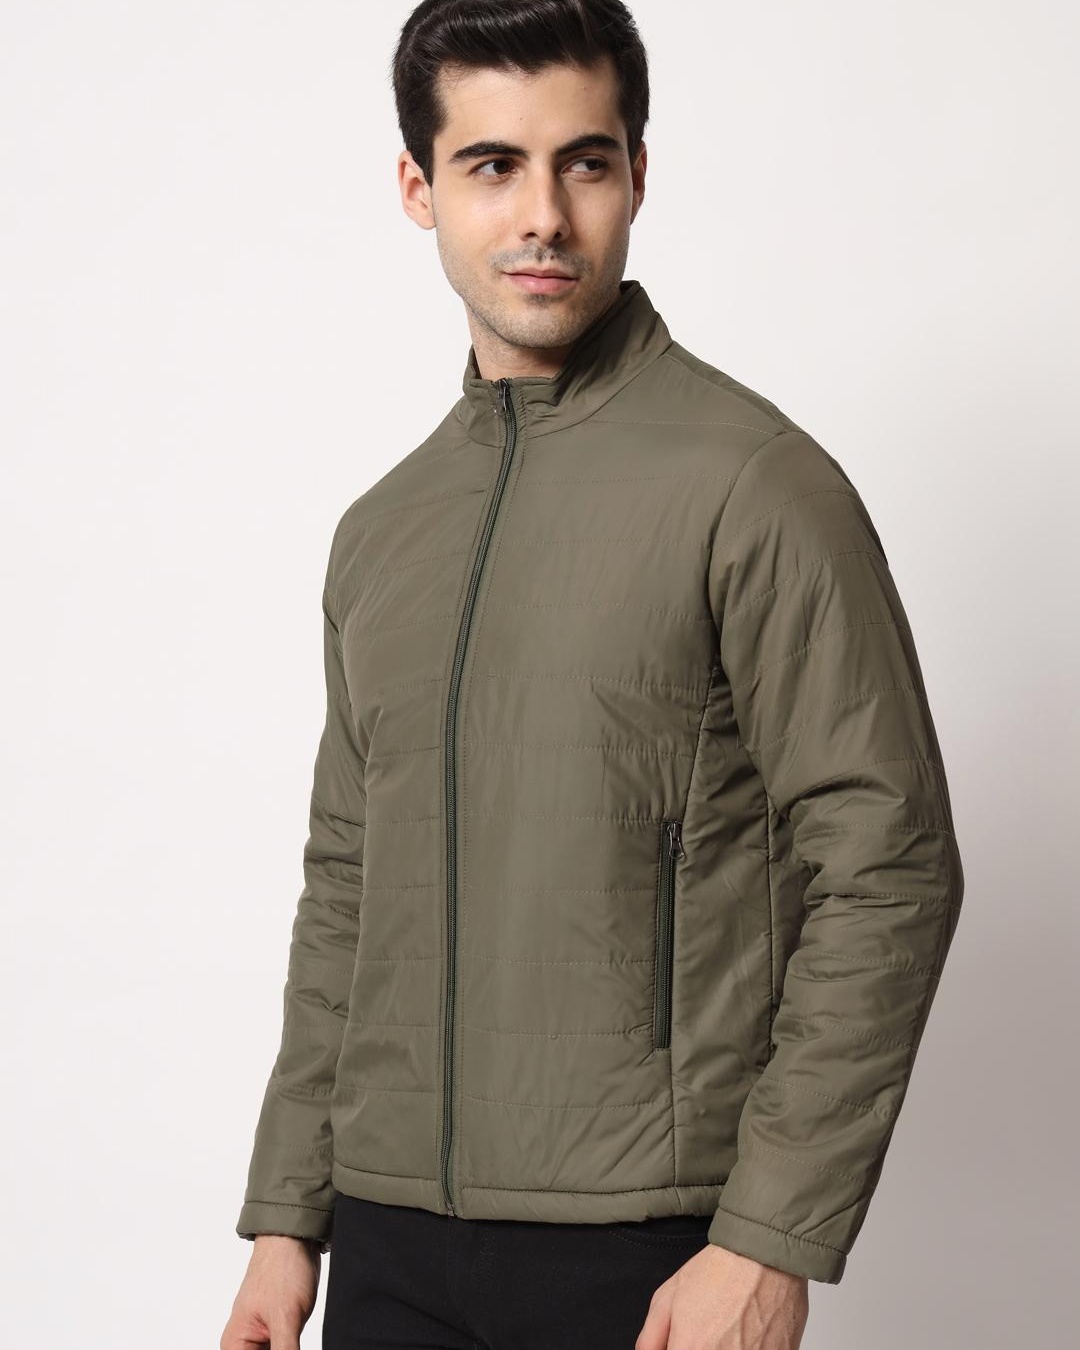 Buy Men's Green Puffer Jacket Online at Bewakoof